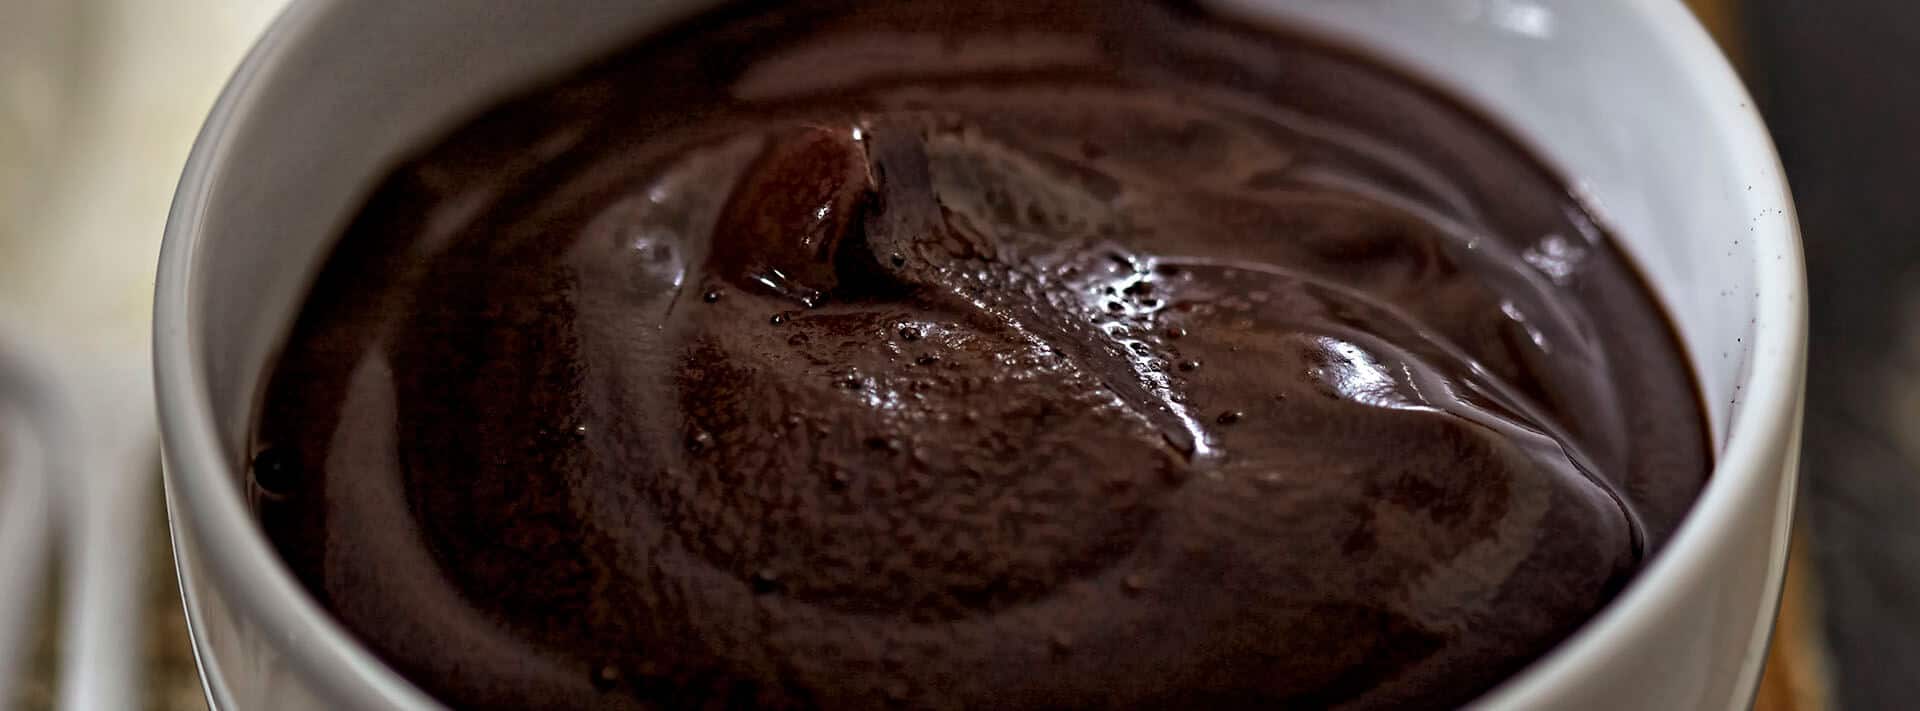 Jak zrobić samodzielnie budyń czekoladowy